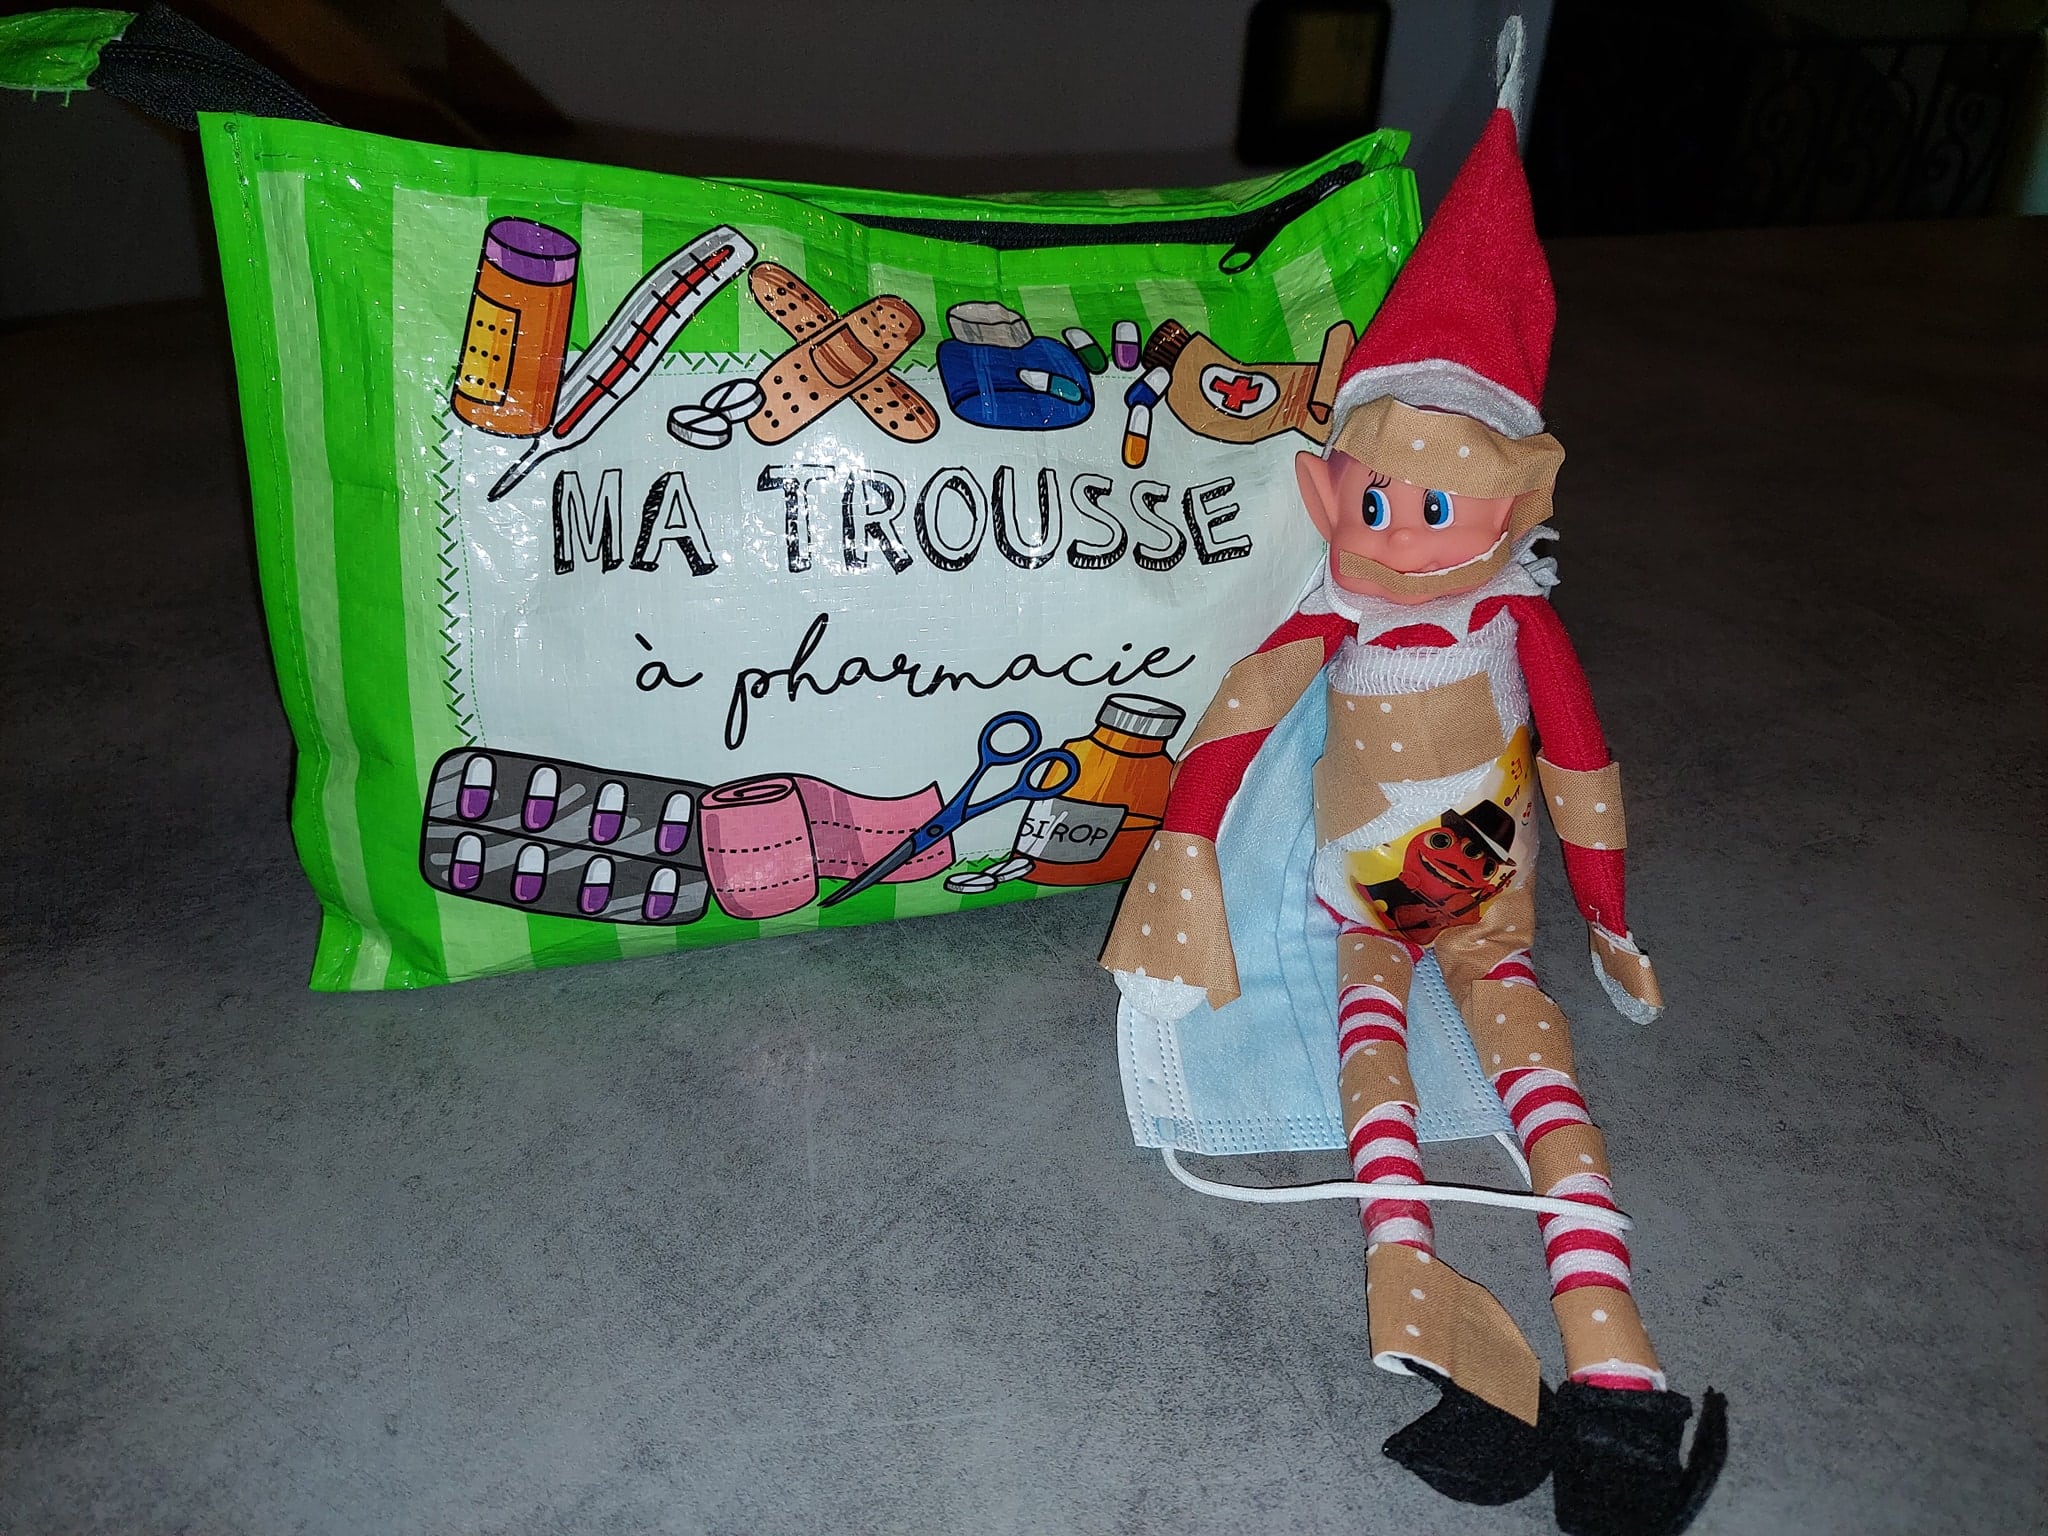 Les farces de notre lutin de Noël (Tradition Elf on the Shelf